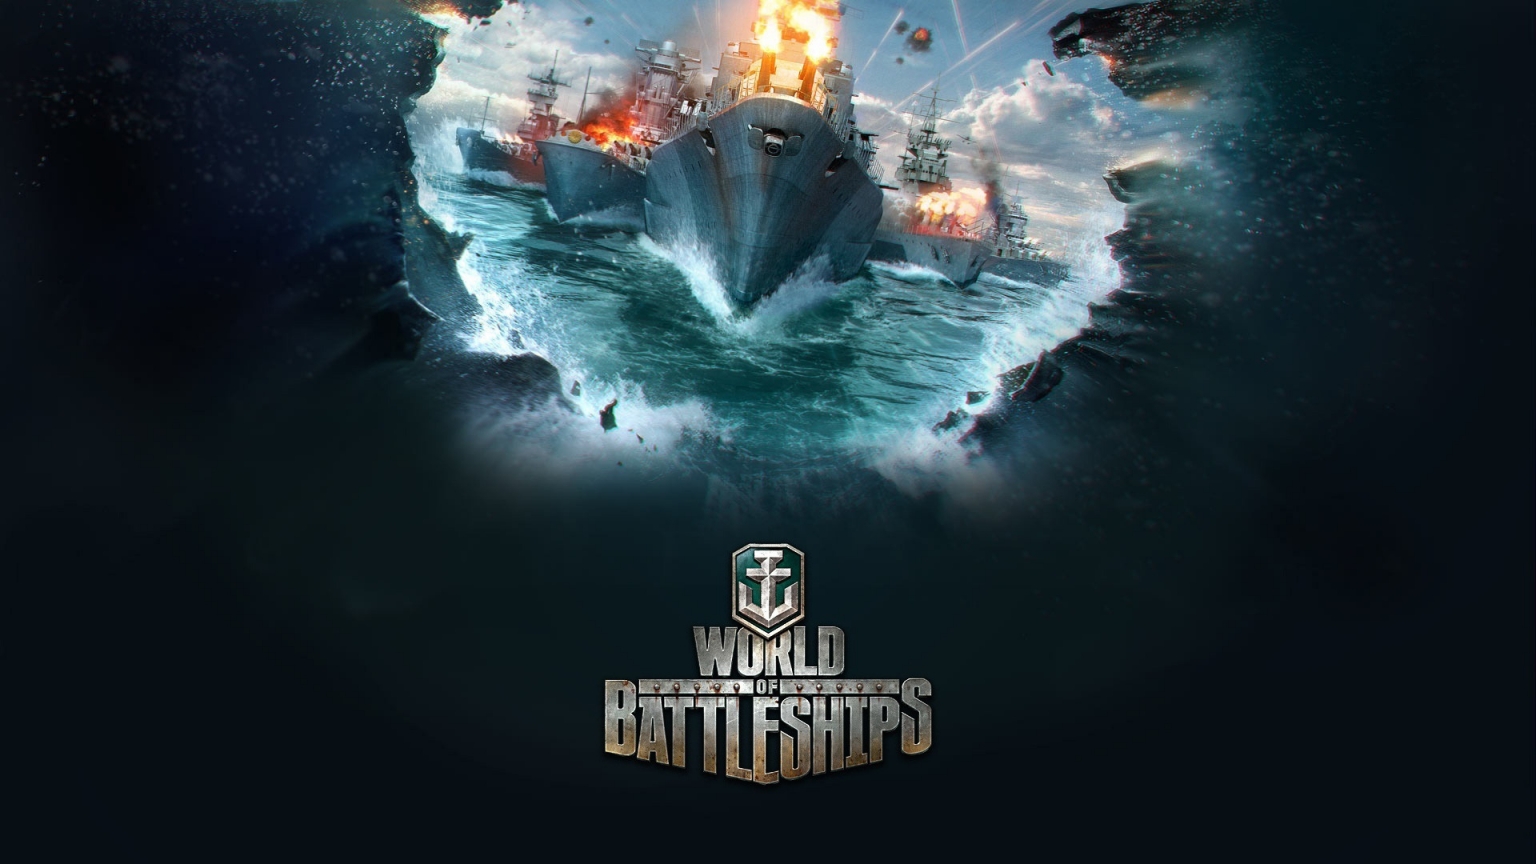 World of Battleships for 1536 x 864 HDTV resolution